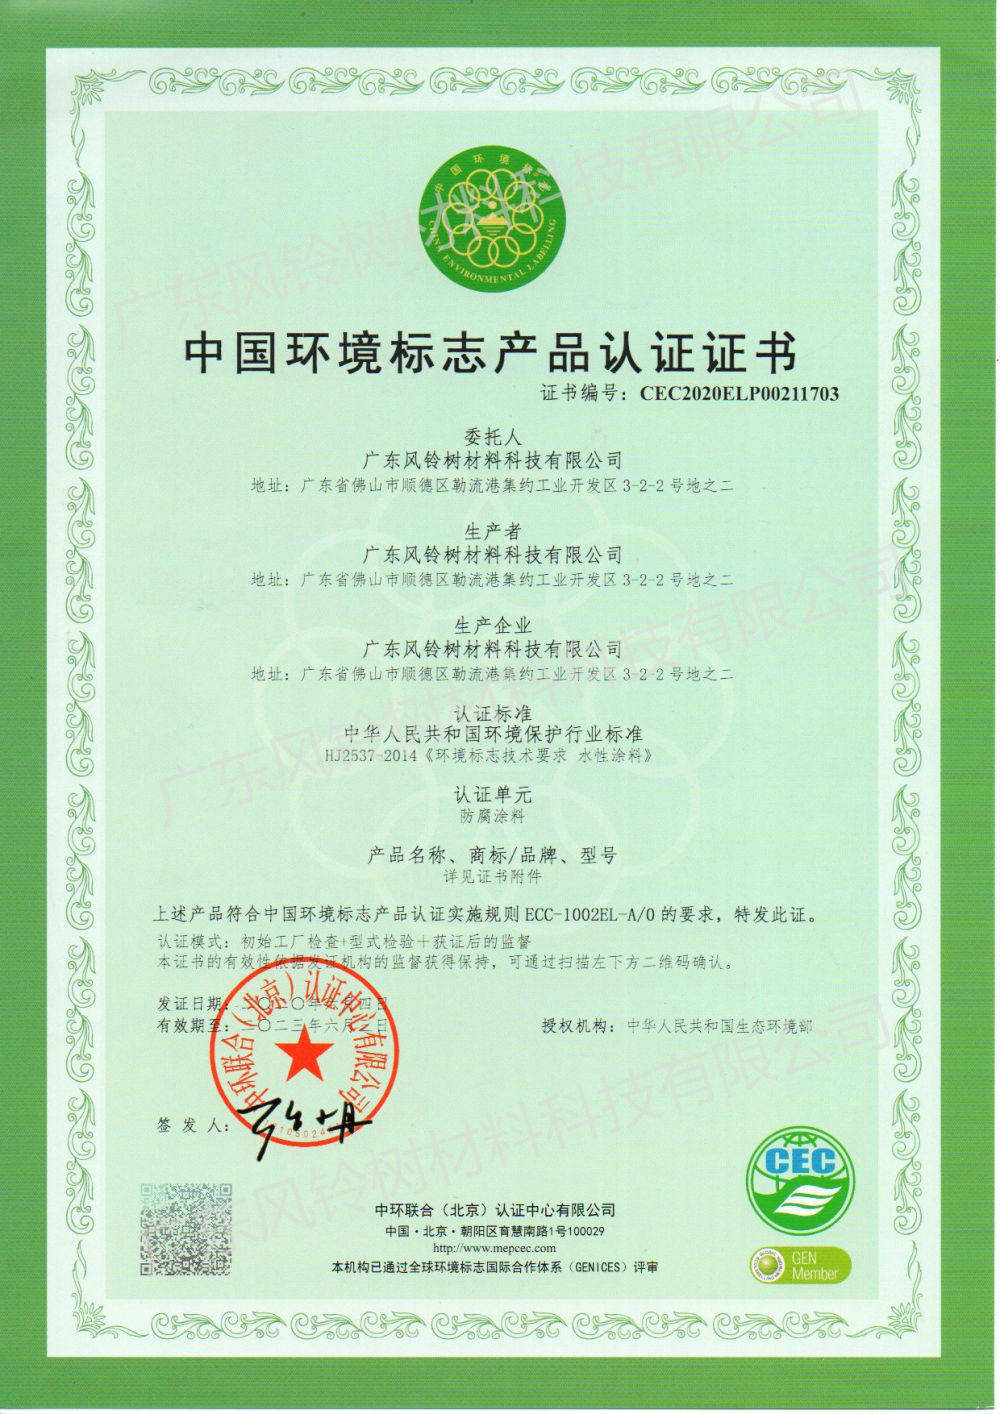 China Ëmweltetikett Produkt Zertifizéierung